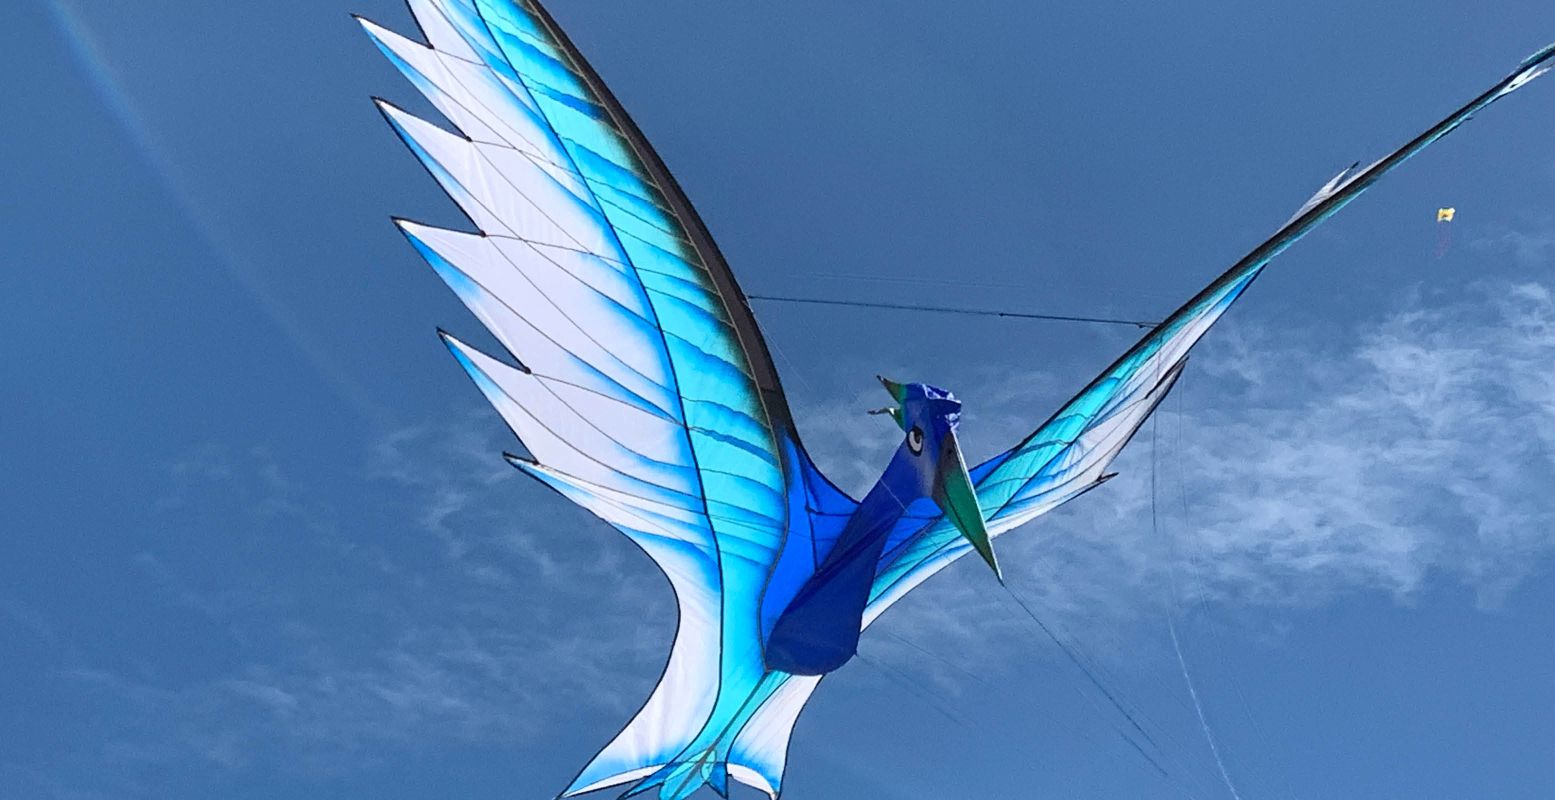 Geniet van een vrolijk kleurspektakel aan vliegers in de lucht. Foto: Stichting Rijsbergse Vliegerdagen